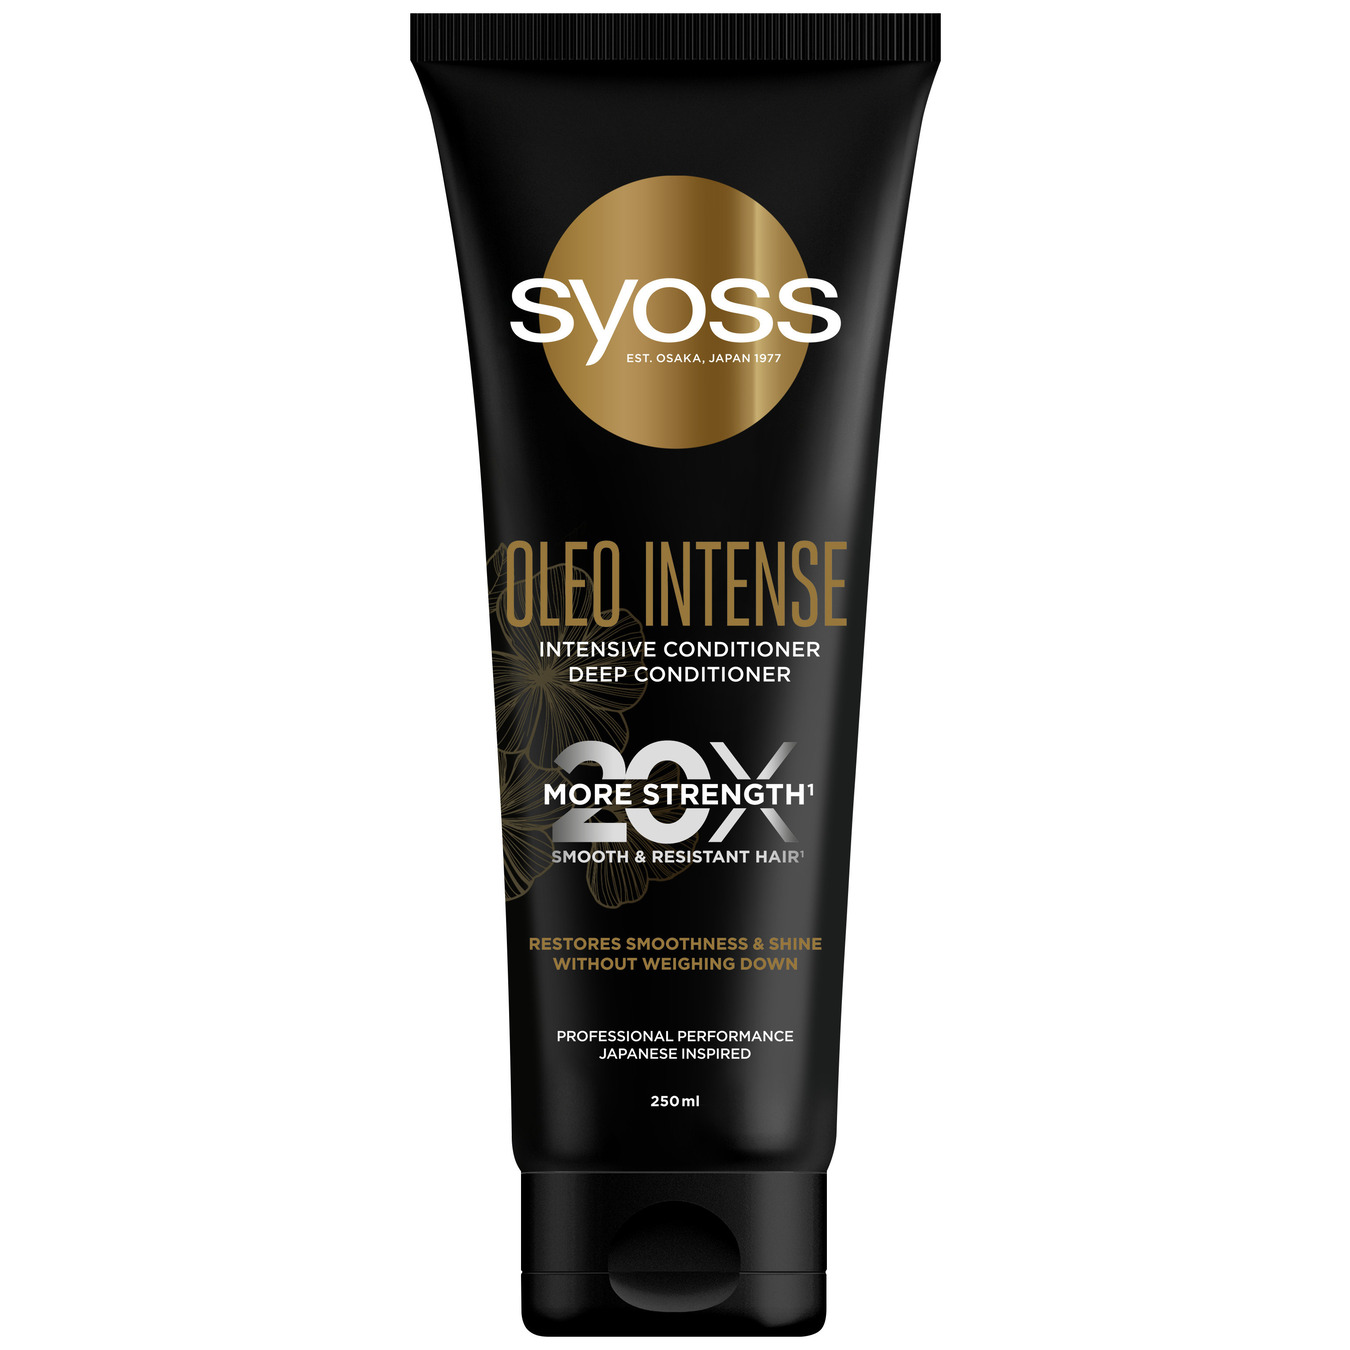 Інтенсивний кондиціонер Syoss Oleo Intense для сухого та тьмяного волосся 250мл